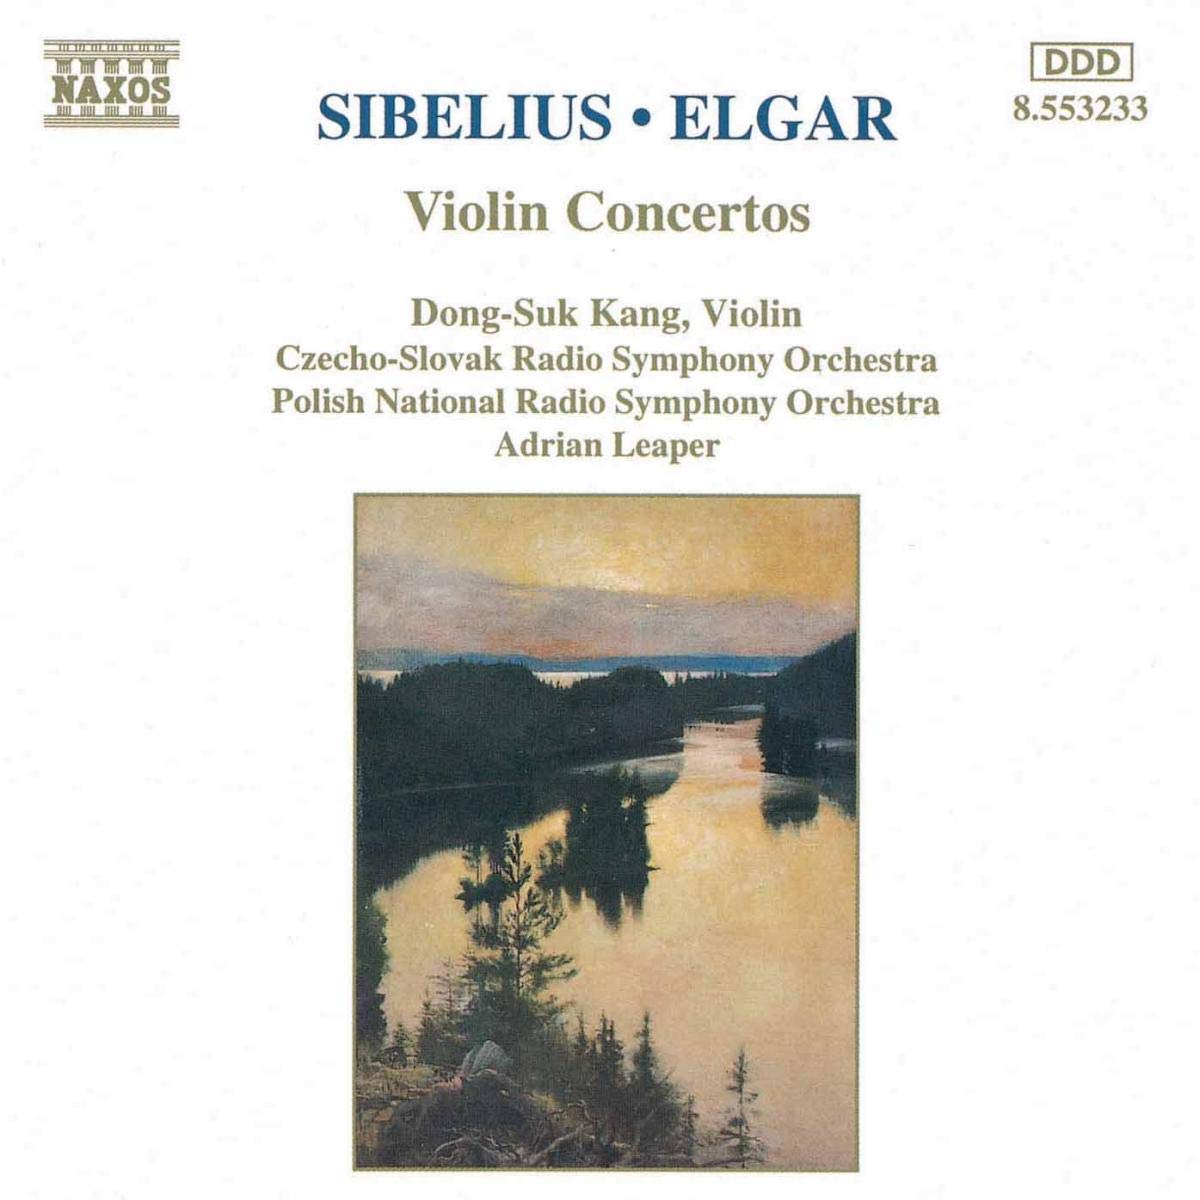 SIBELIUS / ELGAR: Violin Concertos